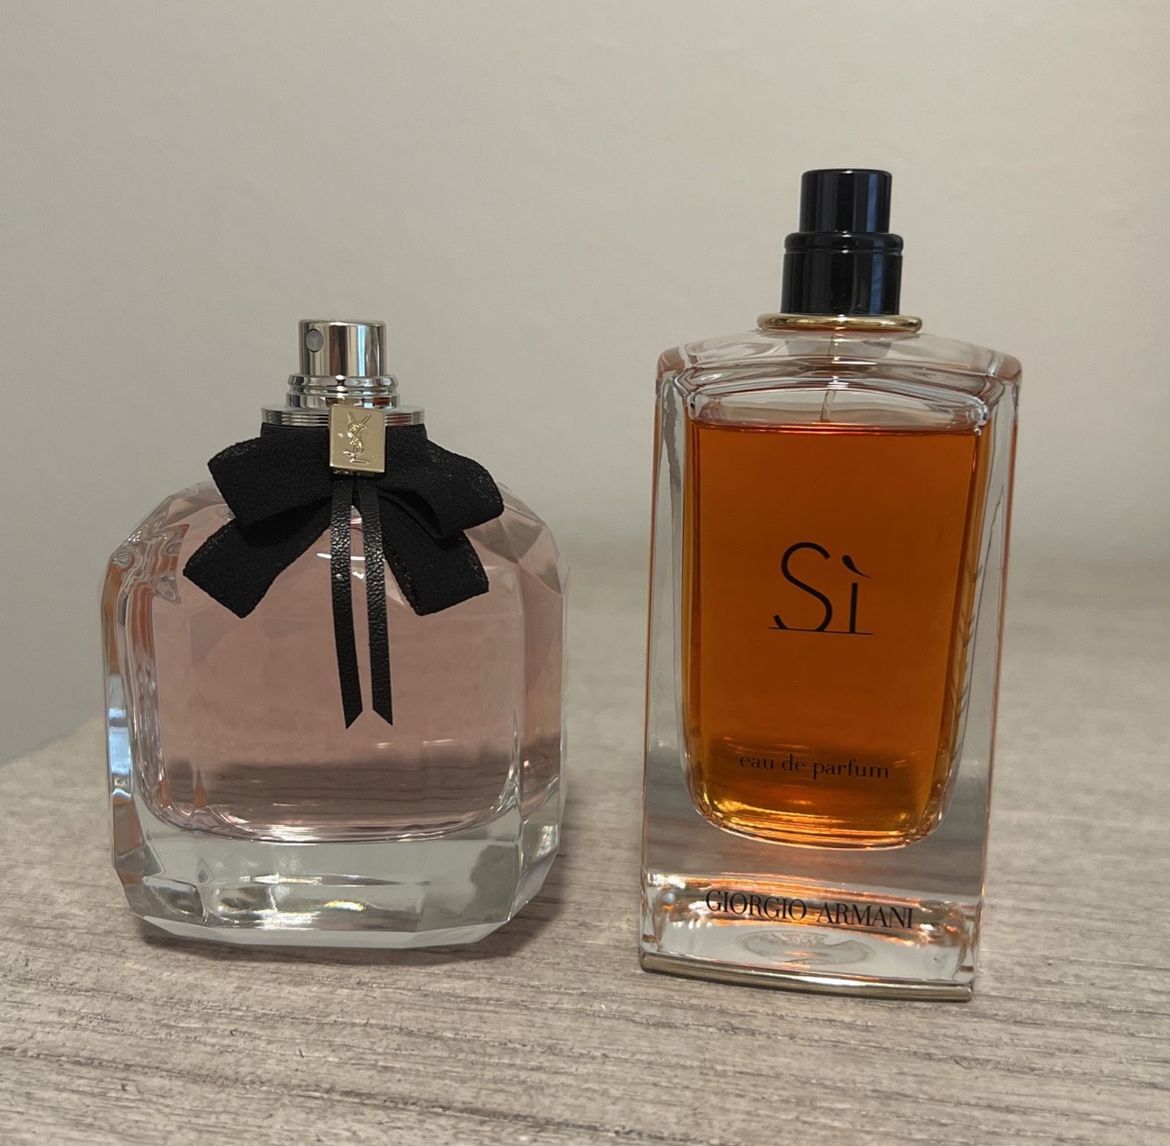 Bundle Of 2 Women’s Perfume 